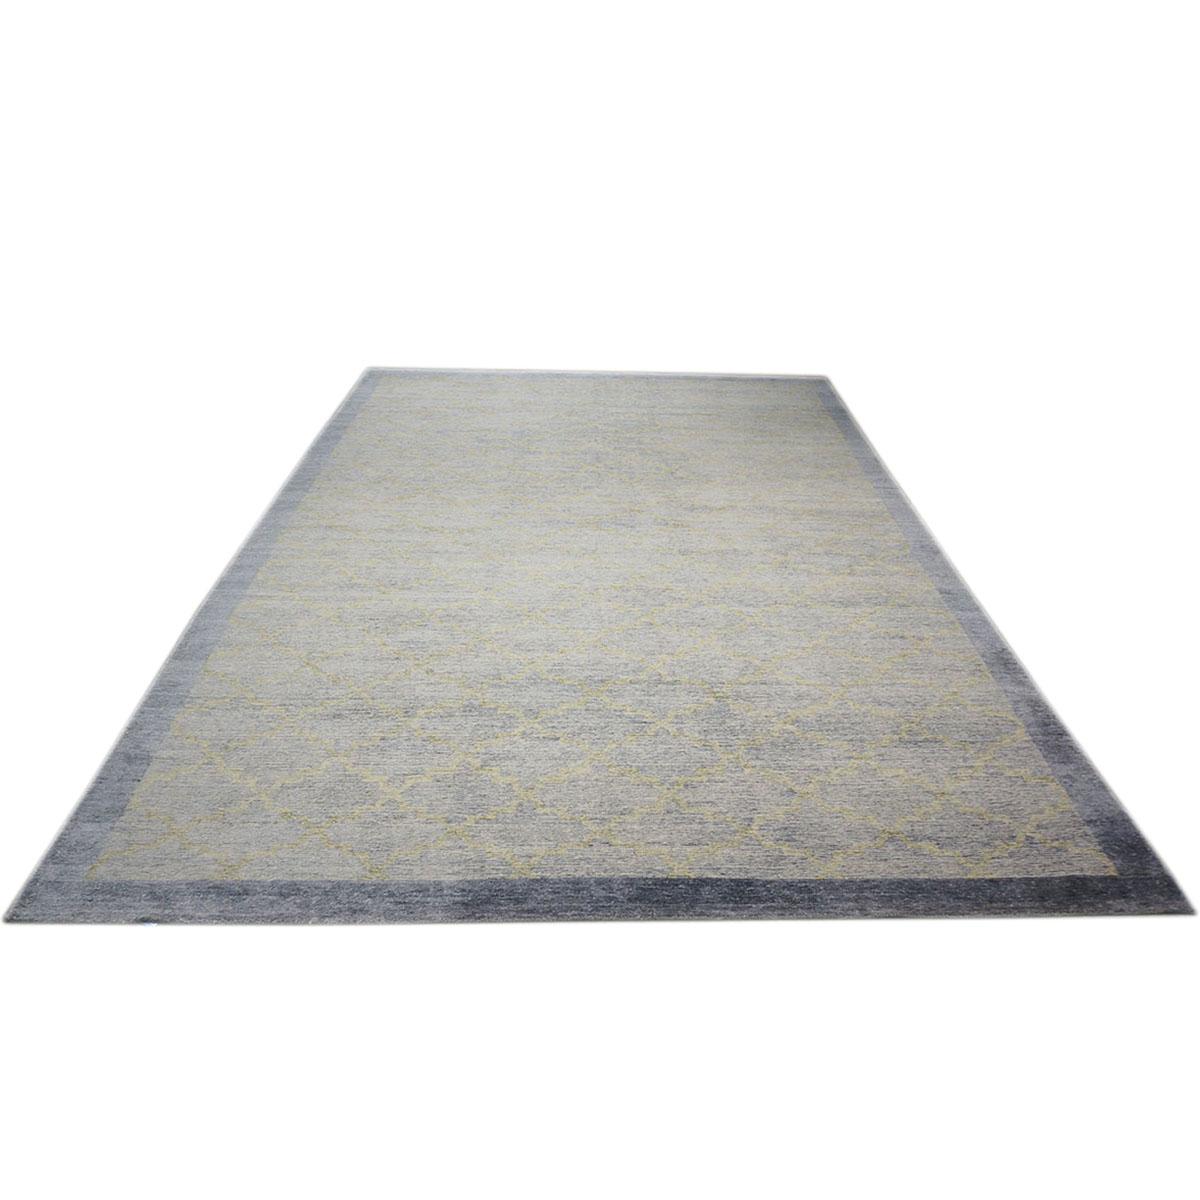 Ashly Fine rugs présente un nouveau tapis d'inspiration moderne en laine et soie 10x14 bleu ardoise et vert clair fait à la main avec des fibres brillantes et un poil épais et durable. Cette magnifique collection a été conçue par notre designer